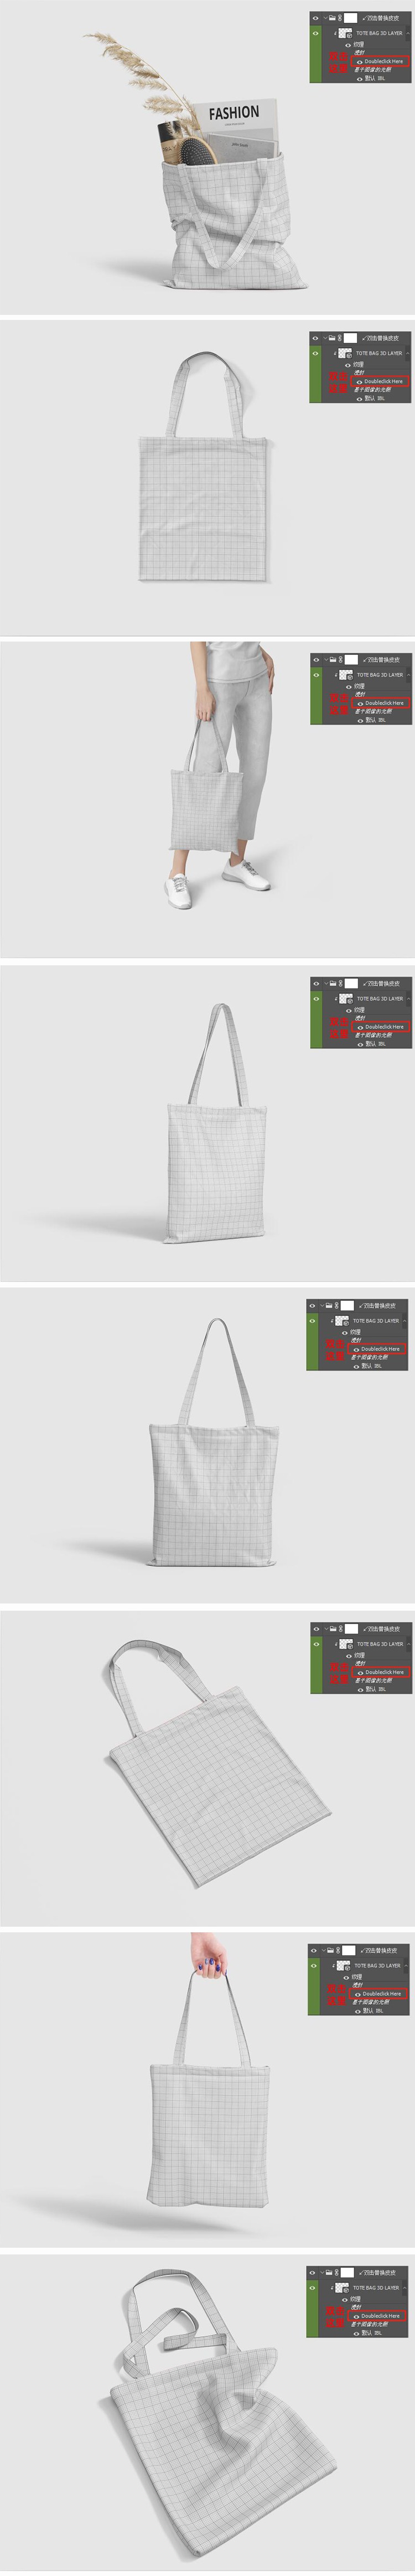 环保文创手提袋帆布袋购物袋印花效果图展示样机PSD贴图素材 图片素材 第2张